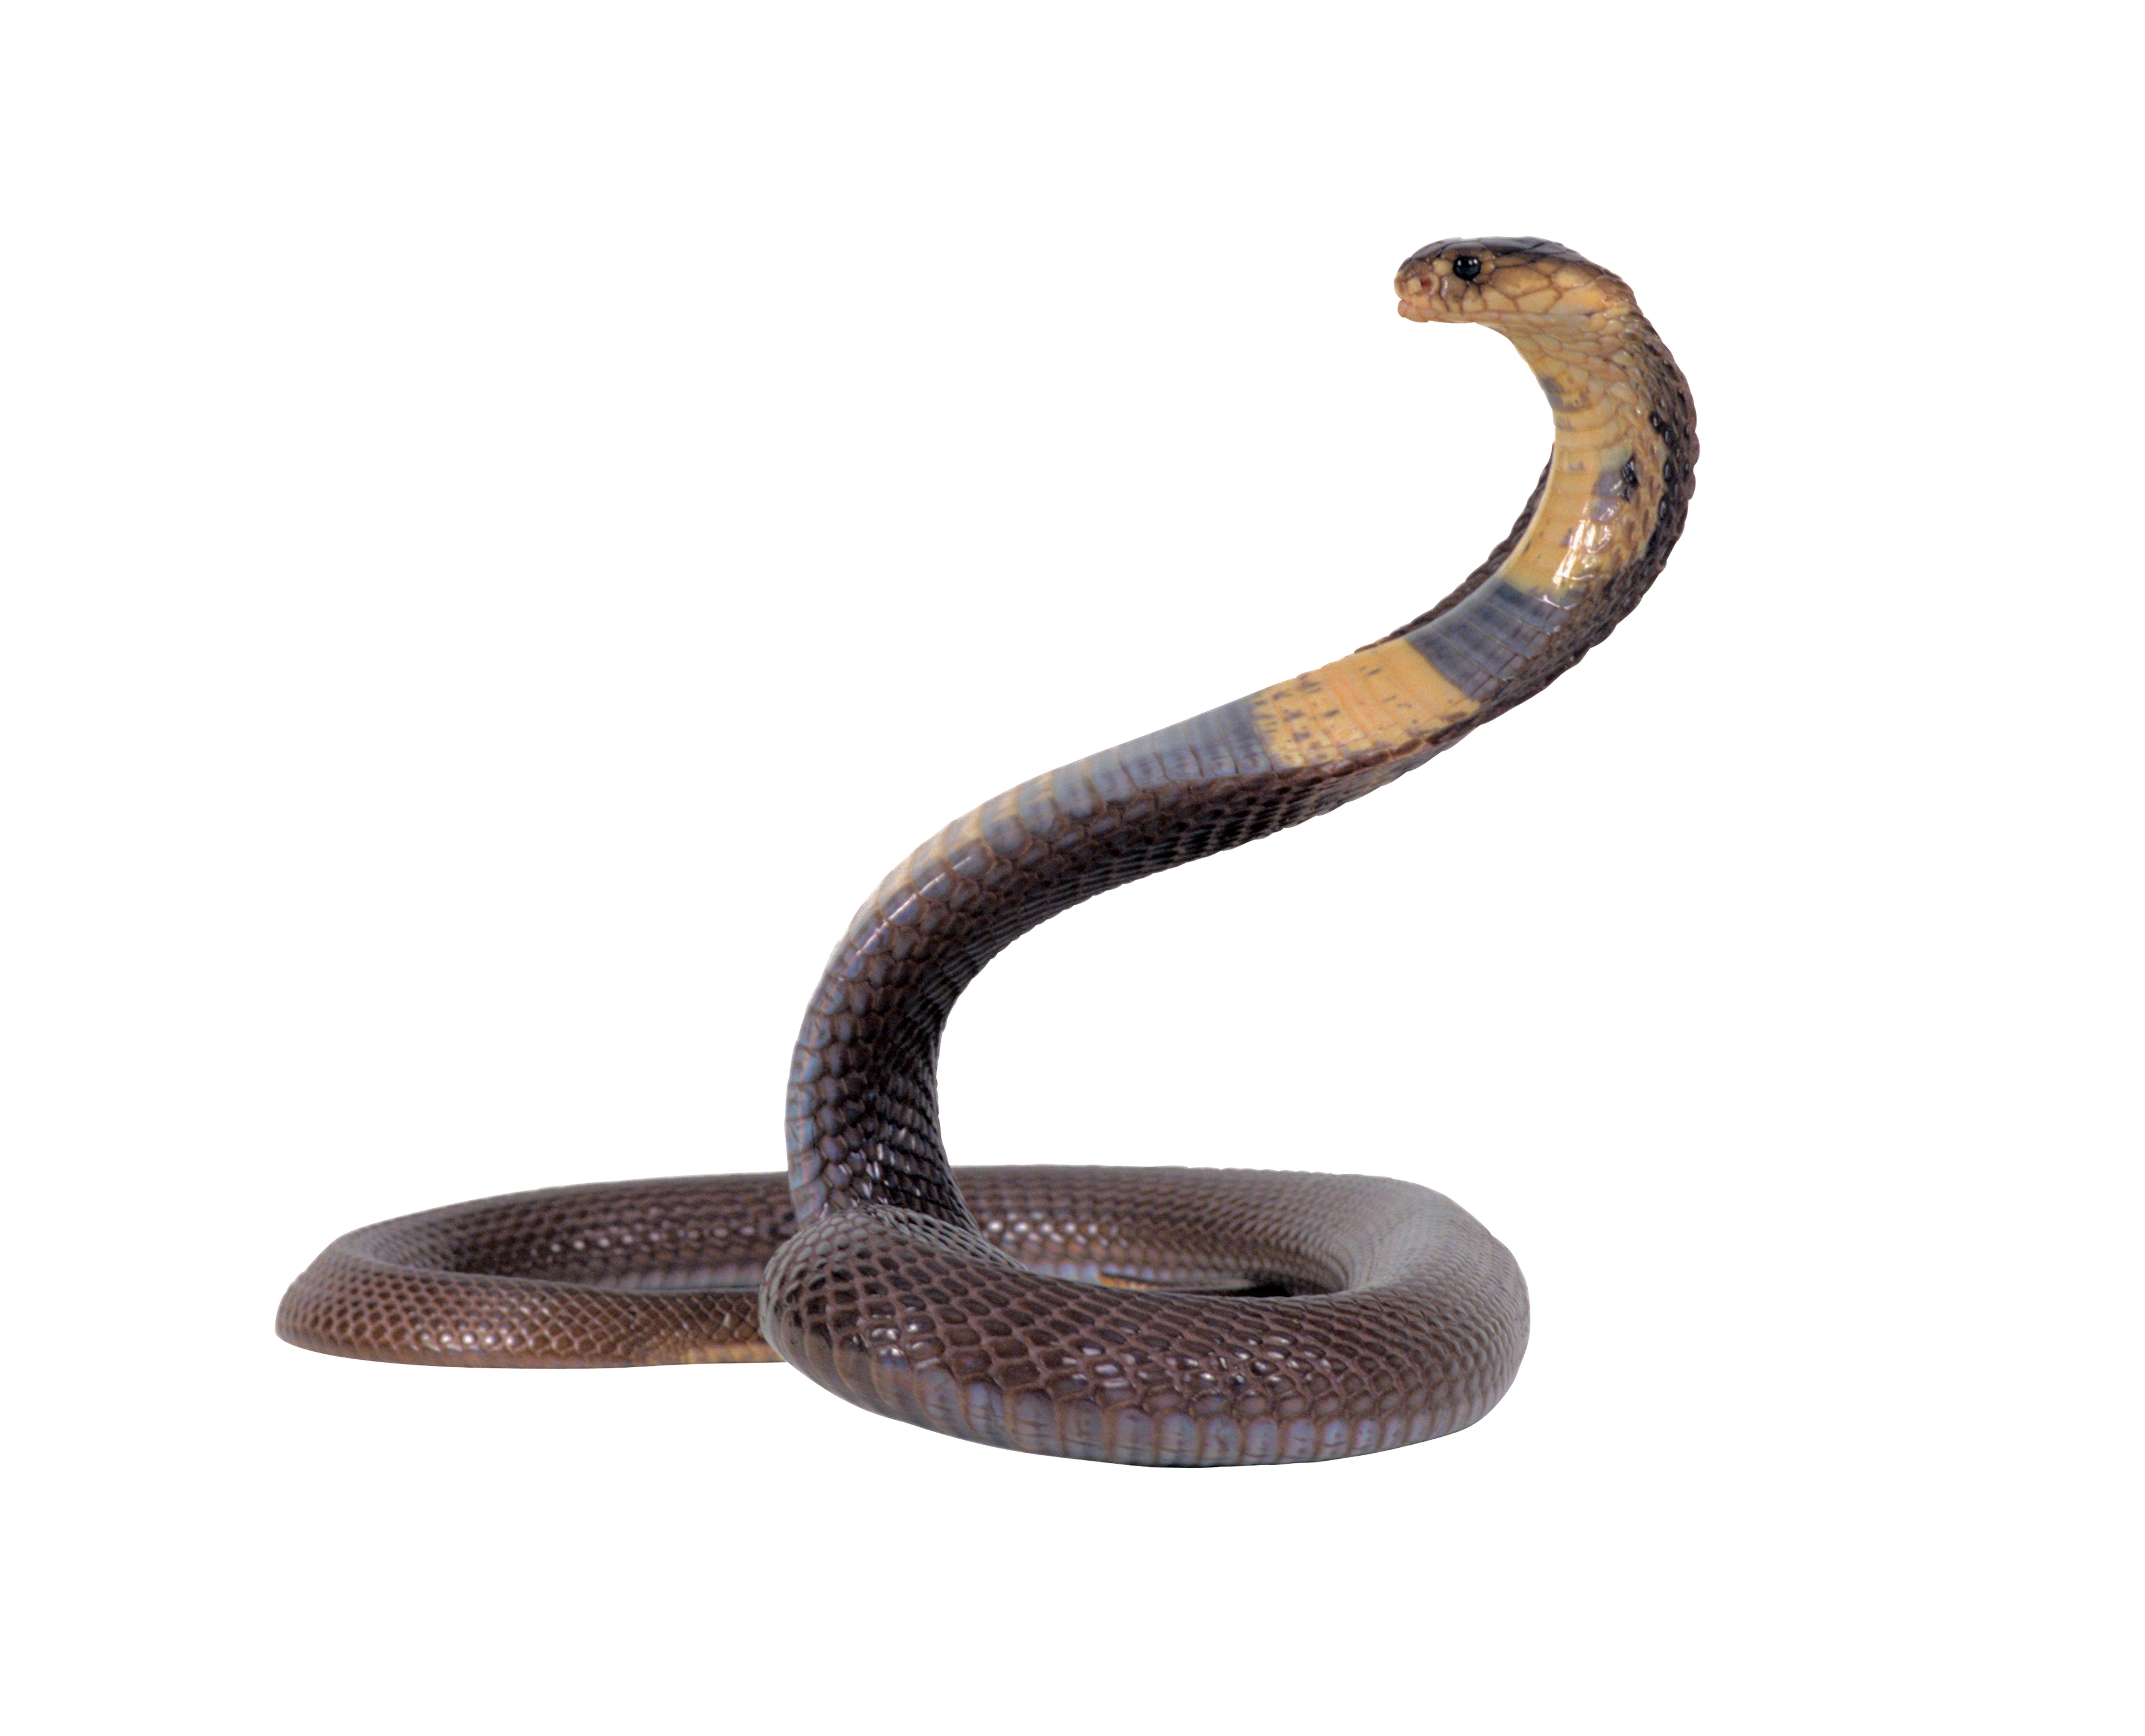 Cobra Head Snake Transparent 